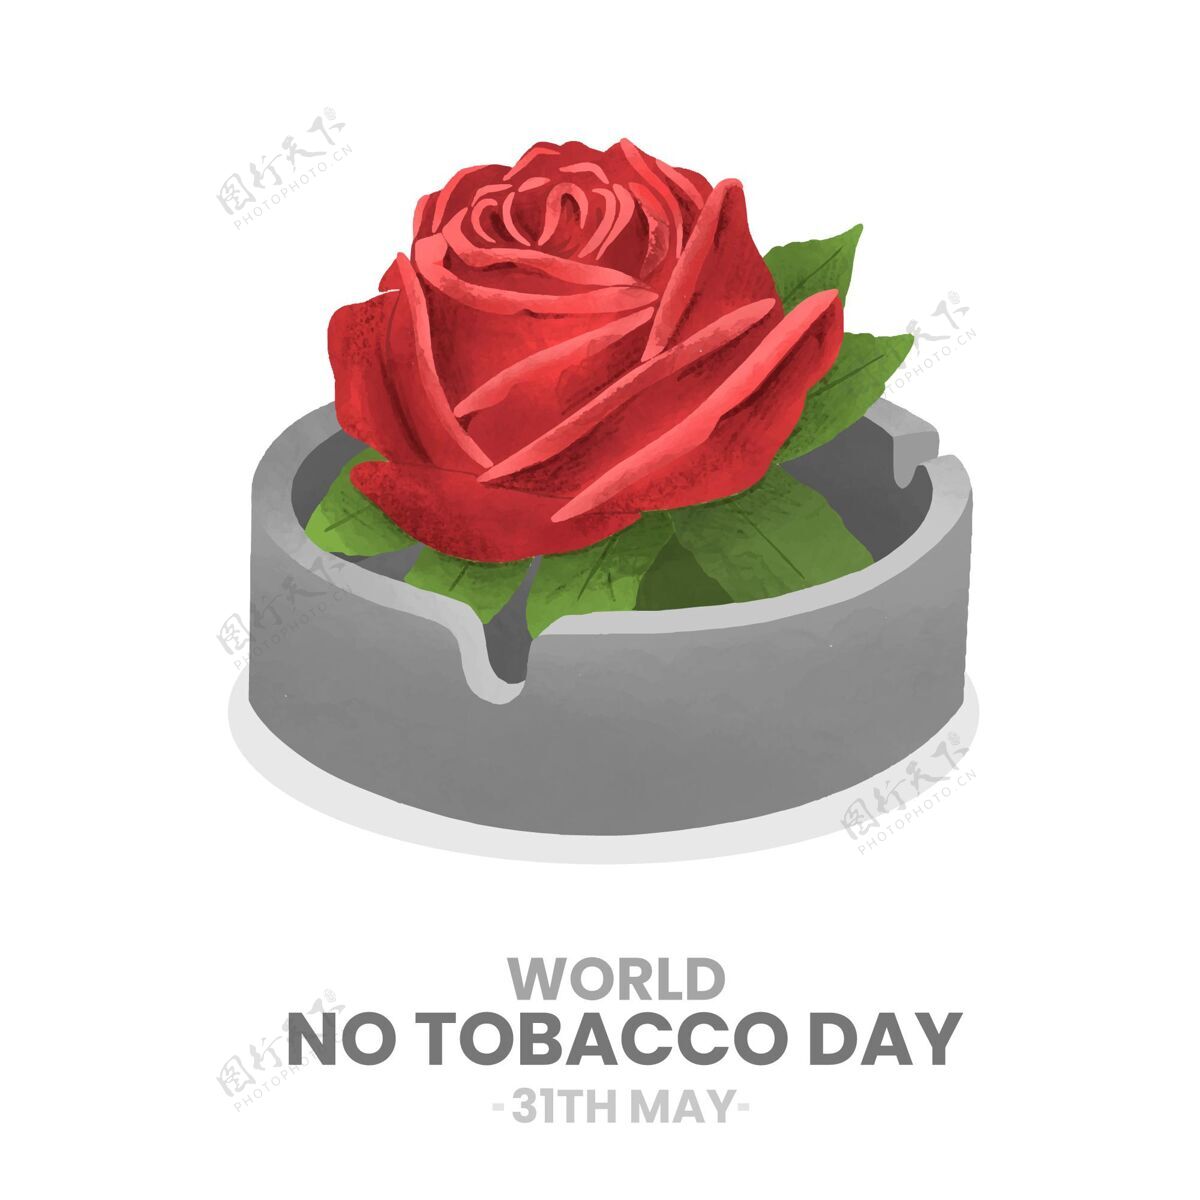 吸烟手绘世界无烟日插画国际习惯活动